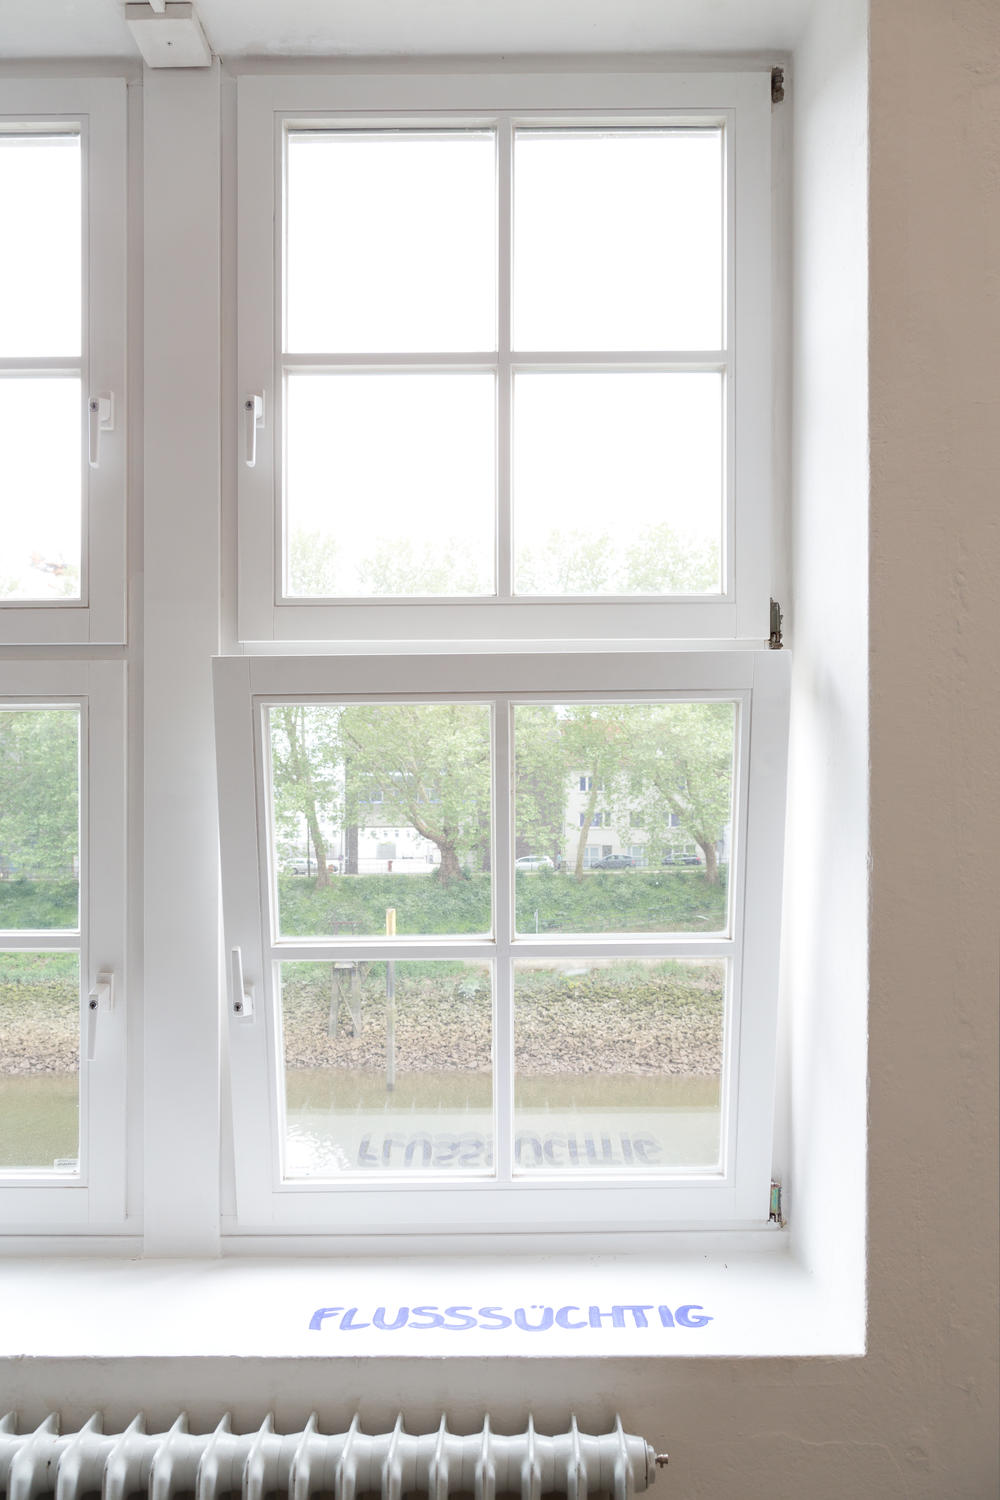 Ein Fenster mit Blick auf die Weser, wo auf der Fensterbank "Flusssüchtig" steht